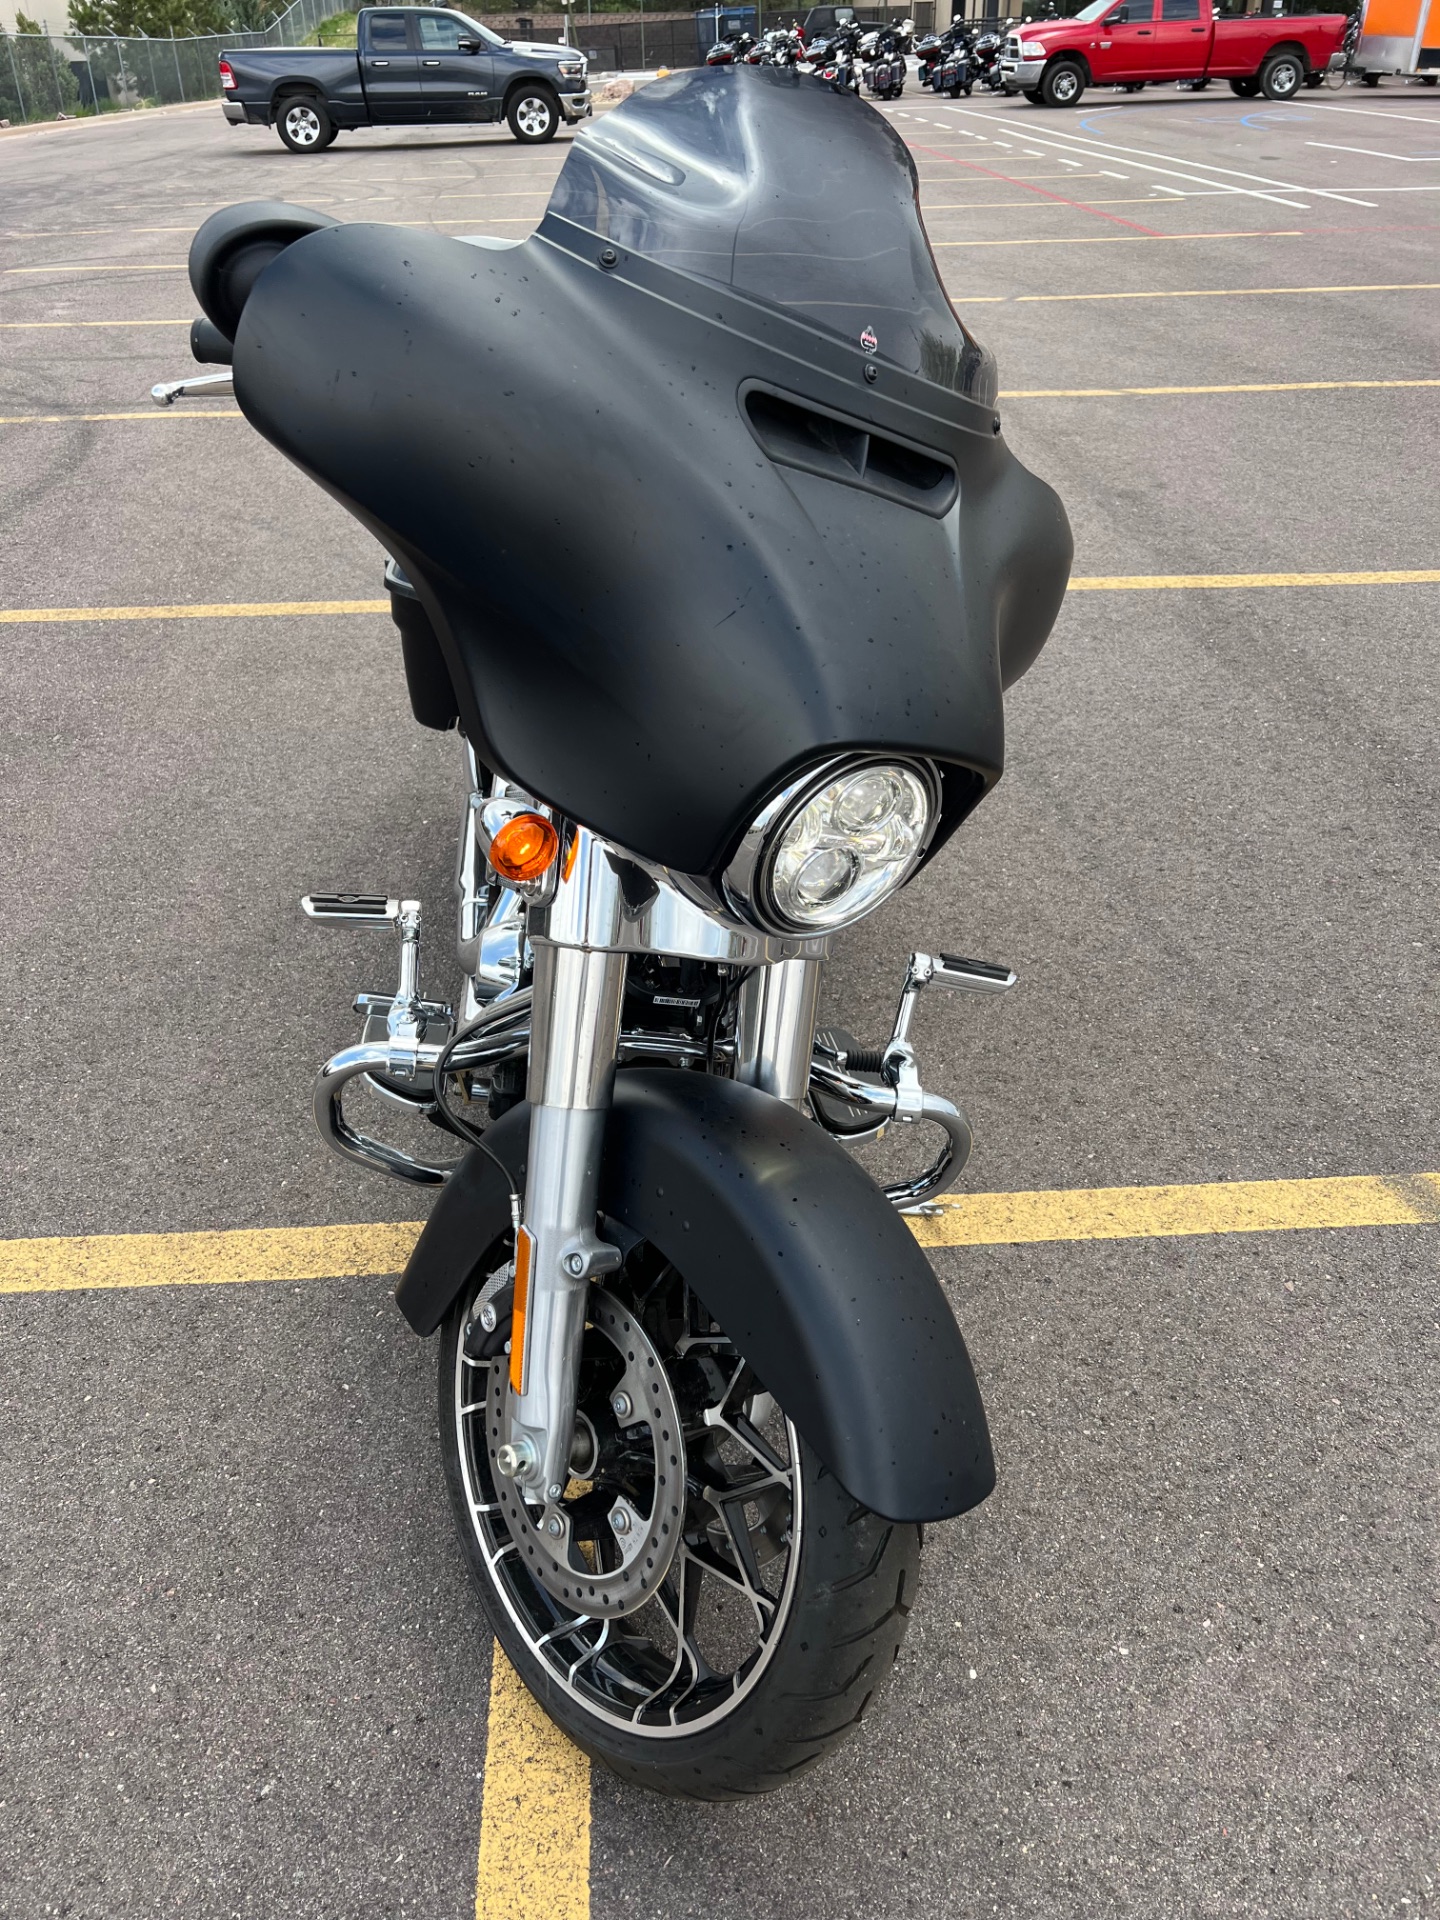 2022 Harley-Davidson Street Glide® Special in Colorado Springs, Colorado - Photo 3